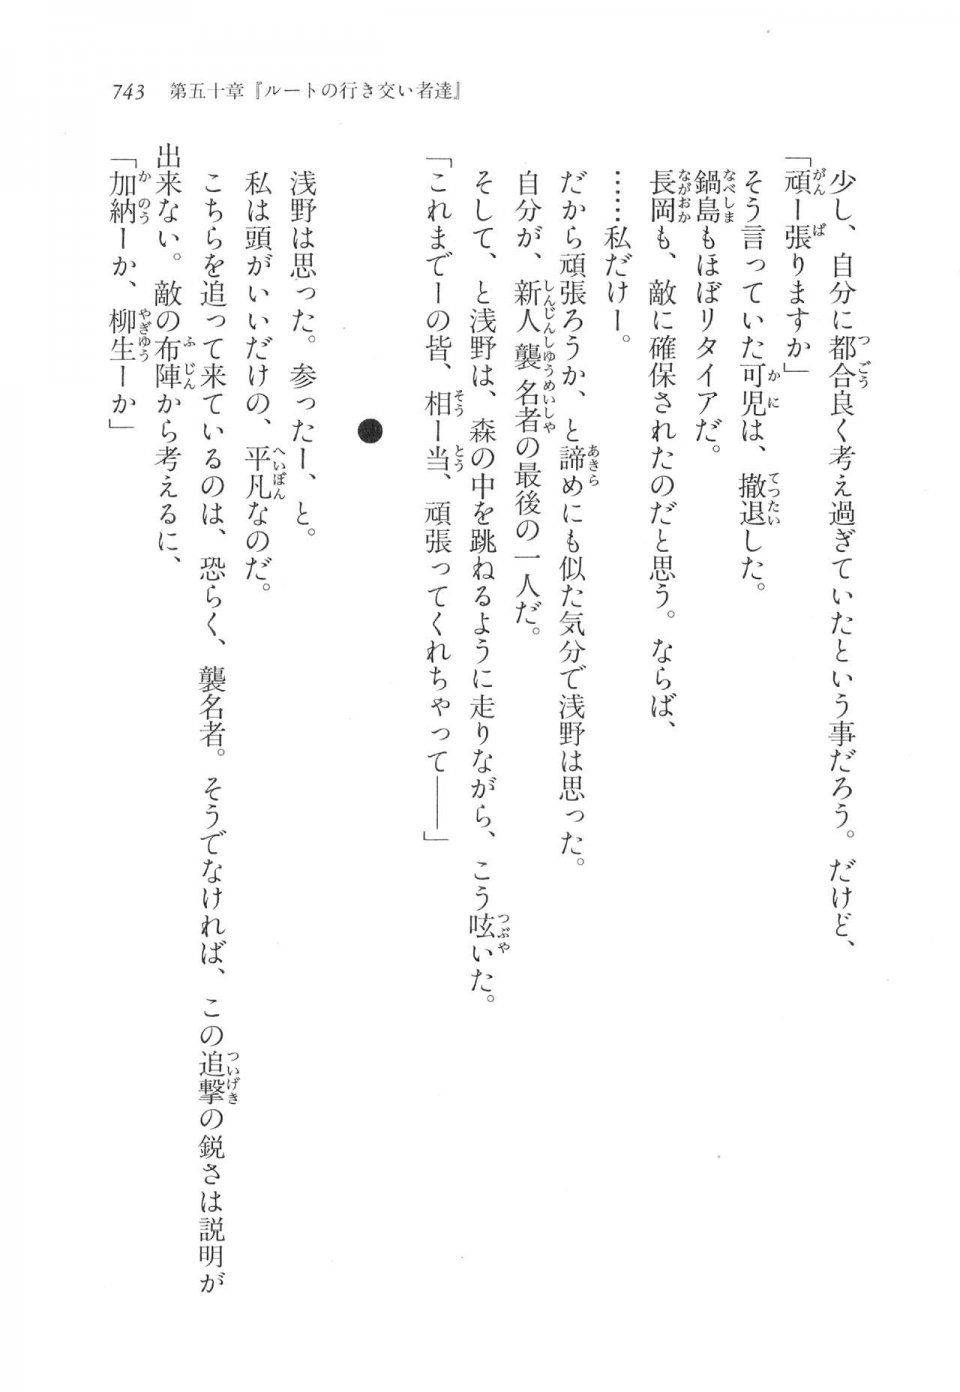 Kyoukai Senjou no Horizon LN Vol 17(7B) - Photo #745